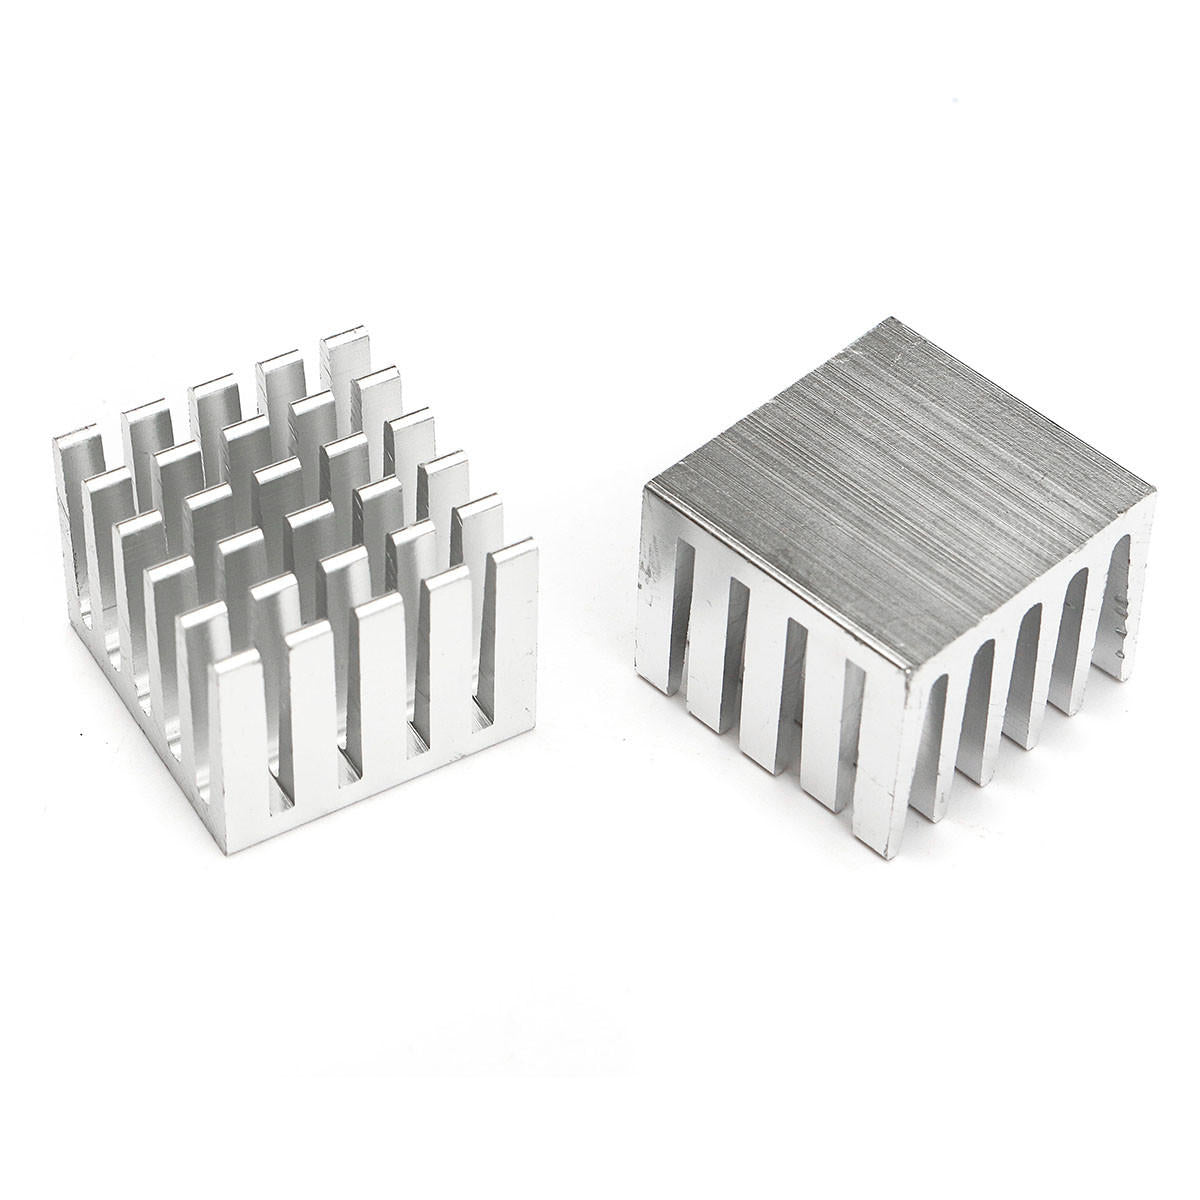 10 stuks 20x20x15mm dhz cpu ic chip koellichaam geëxtrudeerde koeler aluminium koellichaam